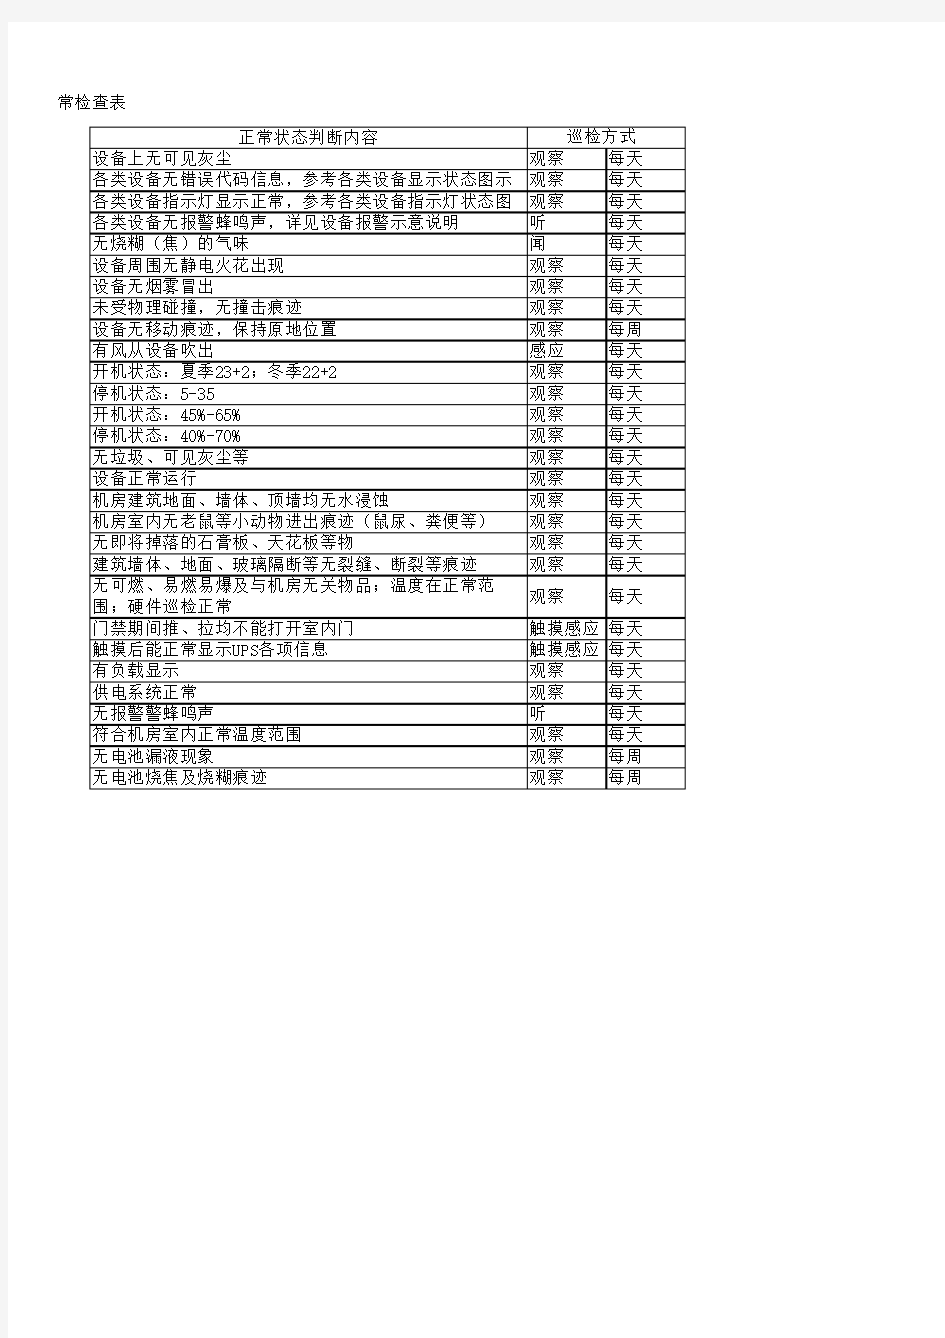 贵州新华电脑学院——机房物理安全日常检查表